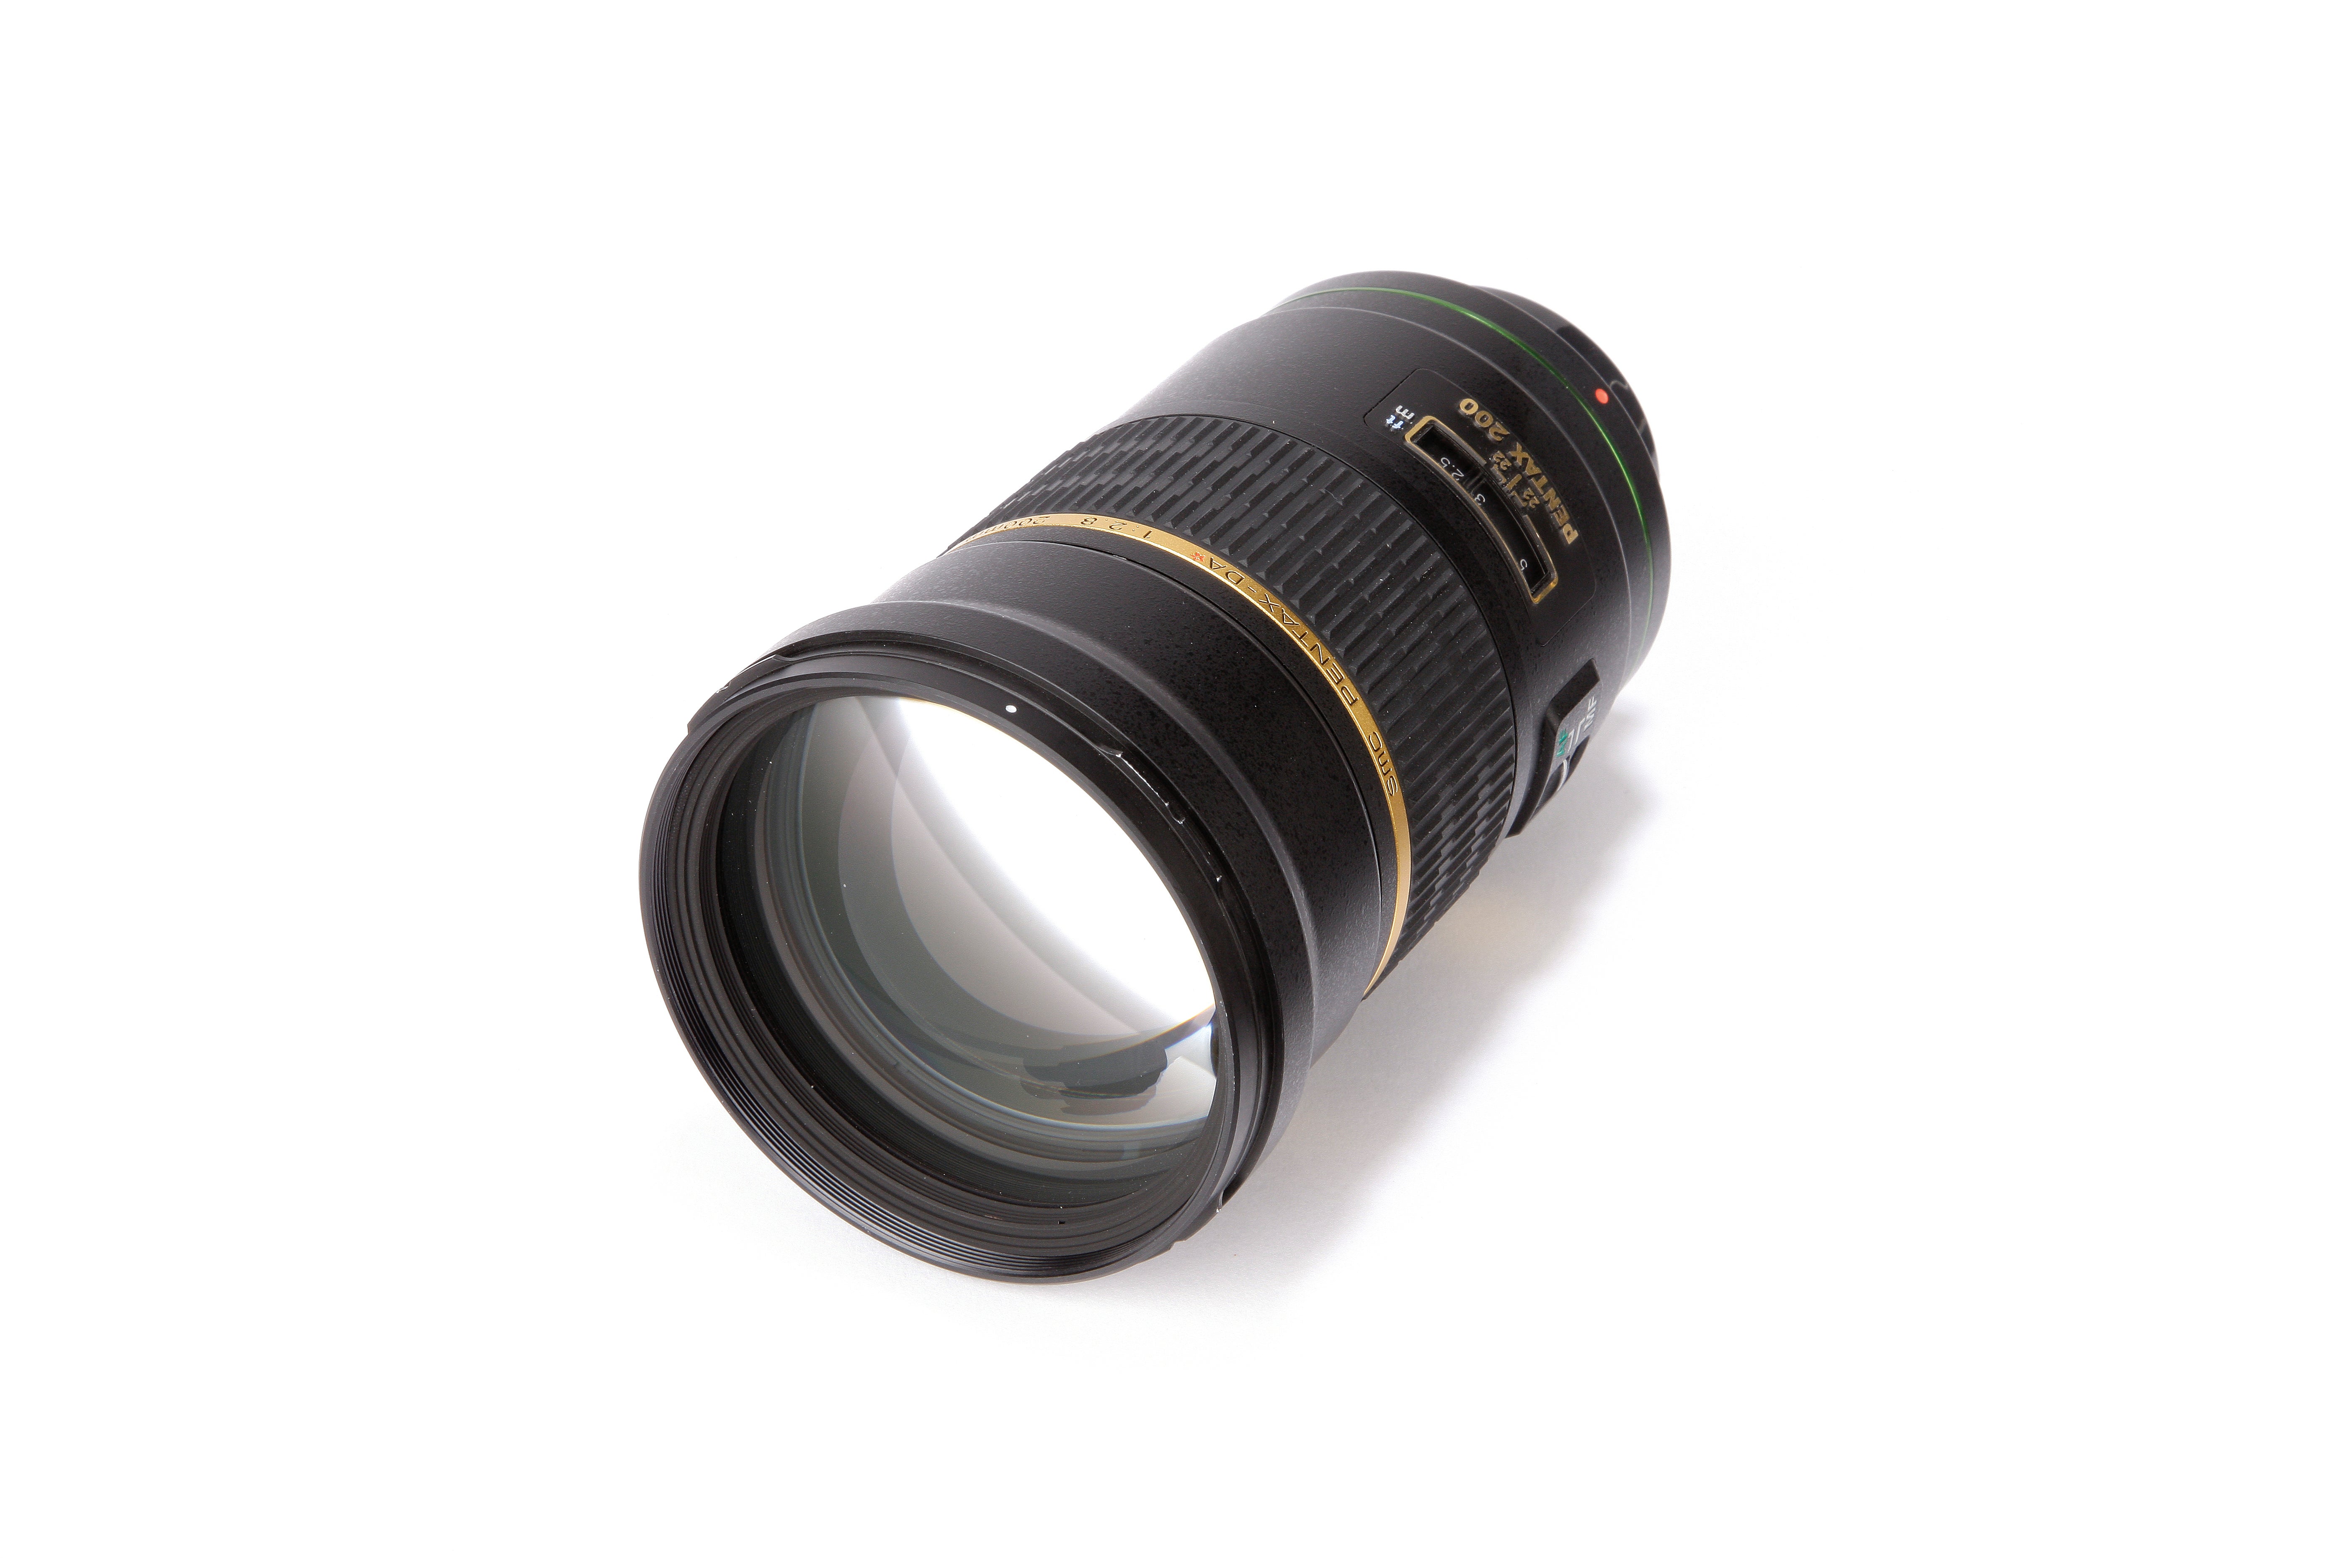 Pentax DA* 200mm SMC f/2.8 ED (IF) SDM Lens Review